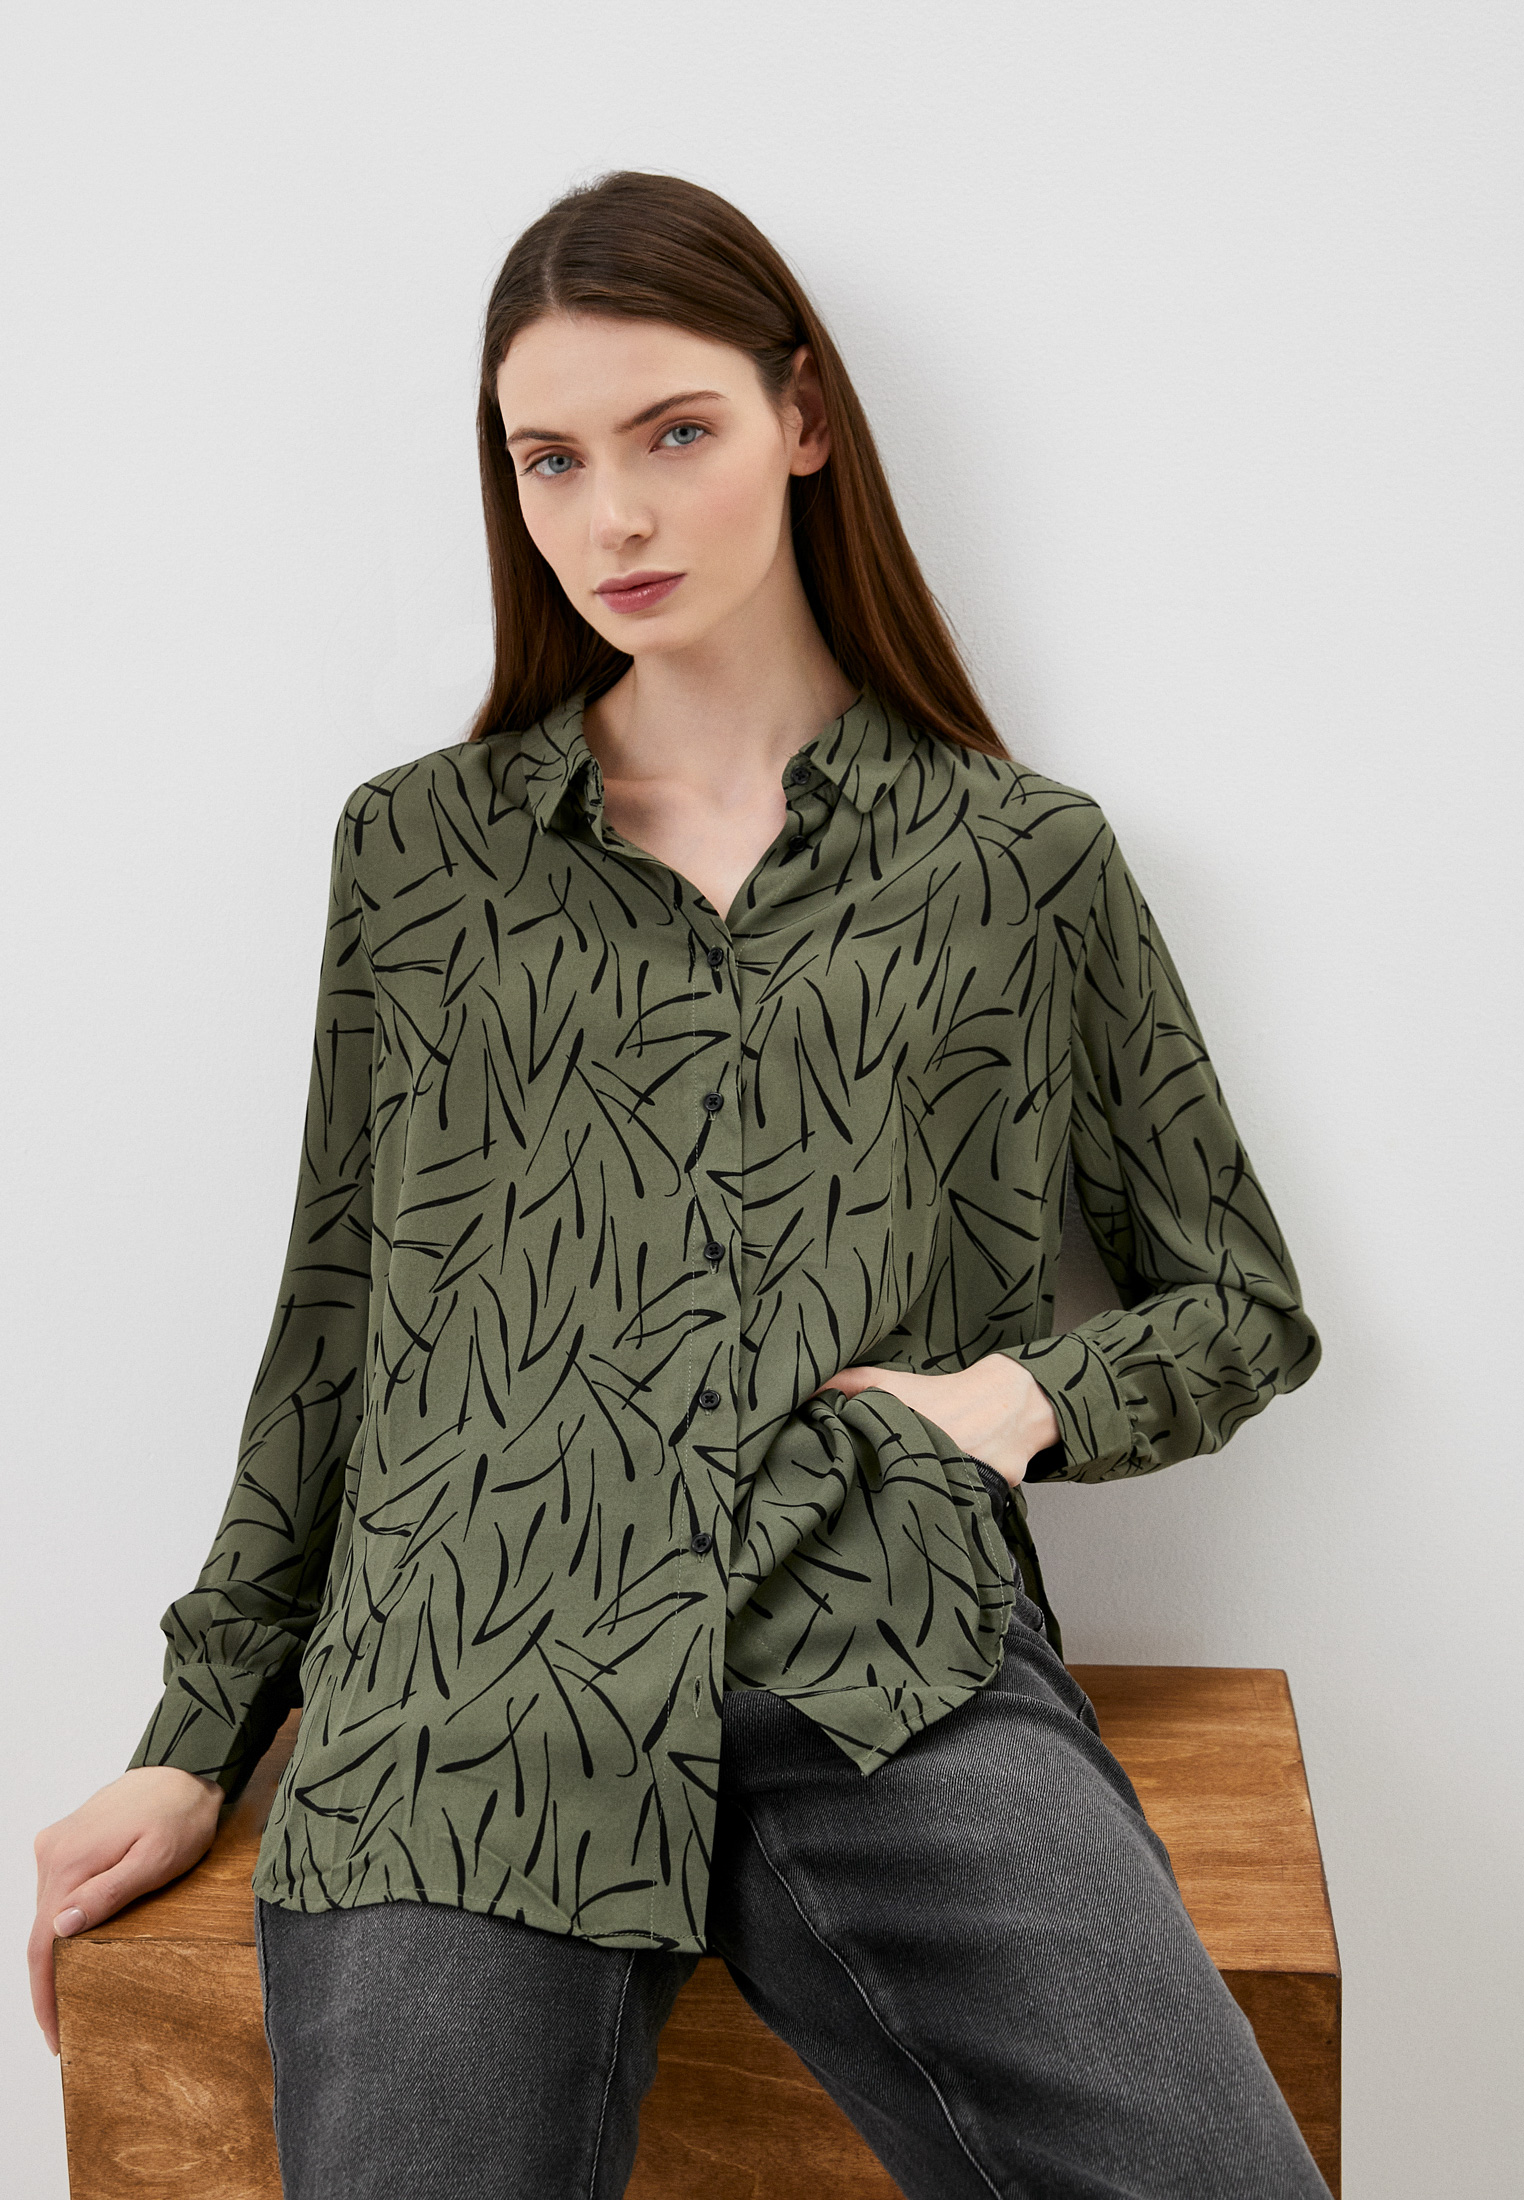 Блуза Zolla, цвет: хаки, MP002XW0B4AY — купить в интернет-магазине Lamoda